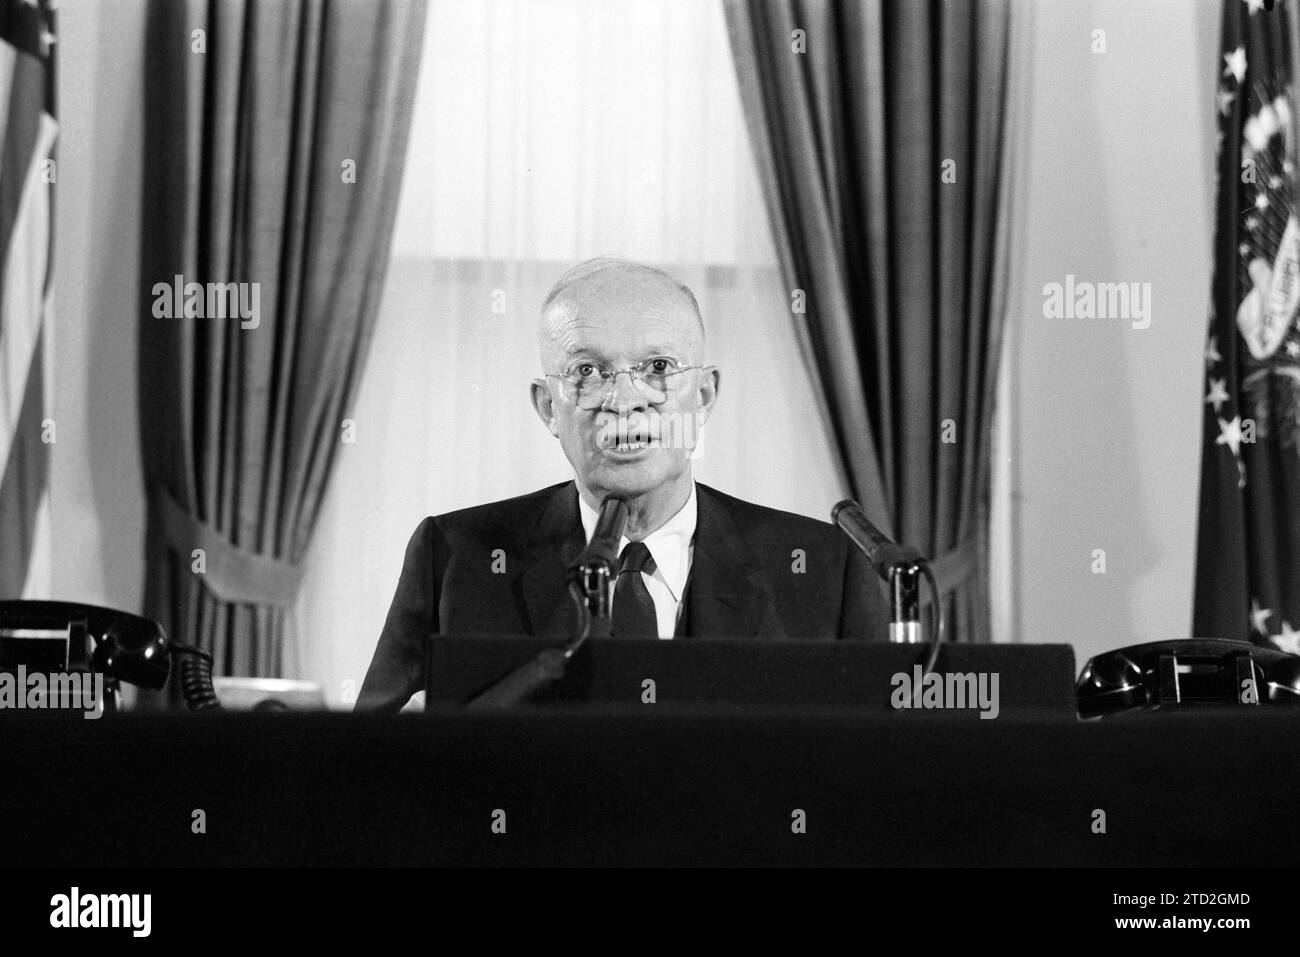 Dwight D. Eisenhower, presidente de los Estados Unidos, pronunciando un discurso sobre la intervención militar de los Estados Unidos en el Líbano, Casa Blanca, Washington, D.C., EE.UU. Marion S. Trikosko, Colección de Fotografías de la revista U.S. News & World Report, 4 de julio de 1958 Foto de stock